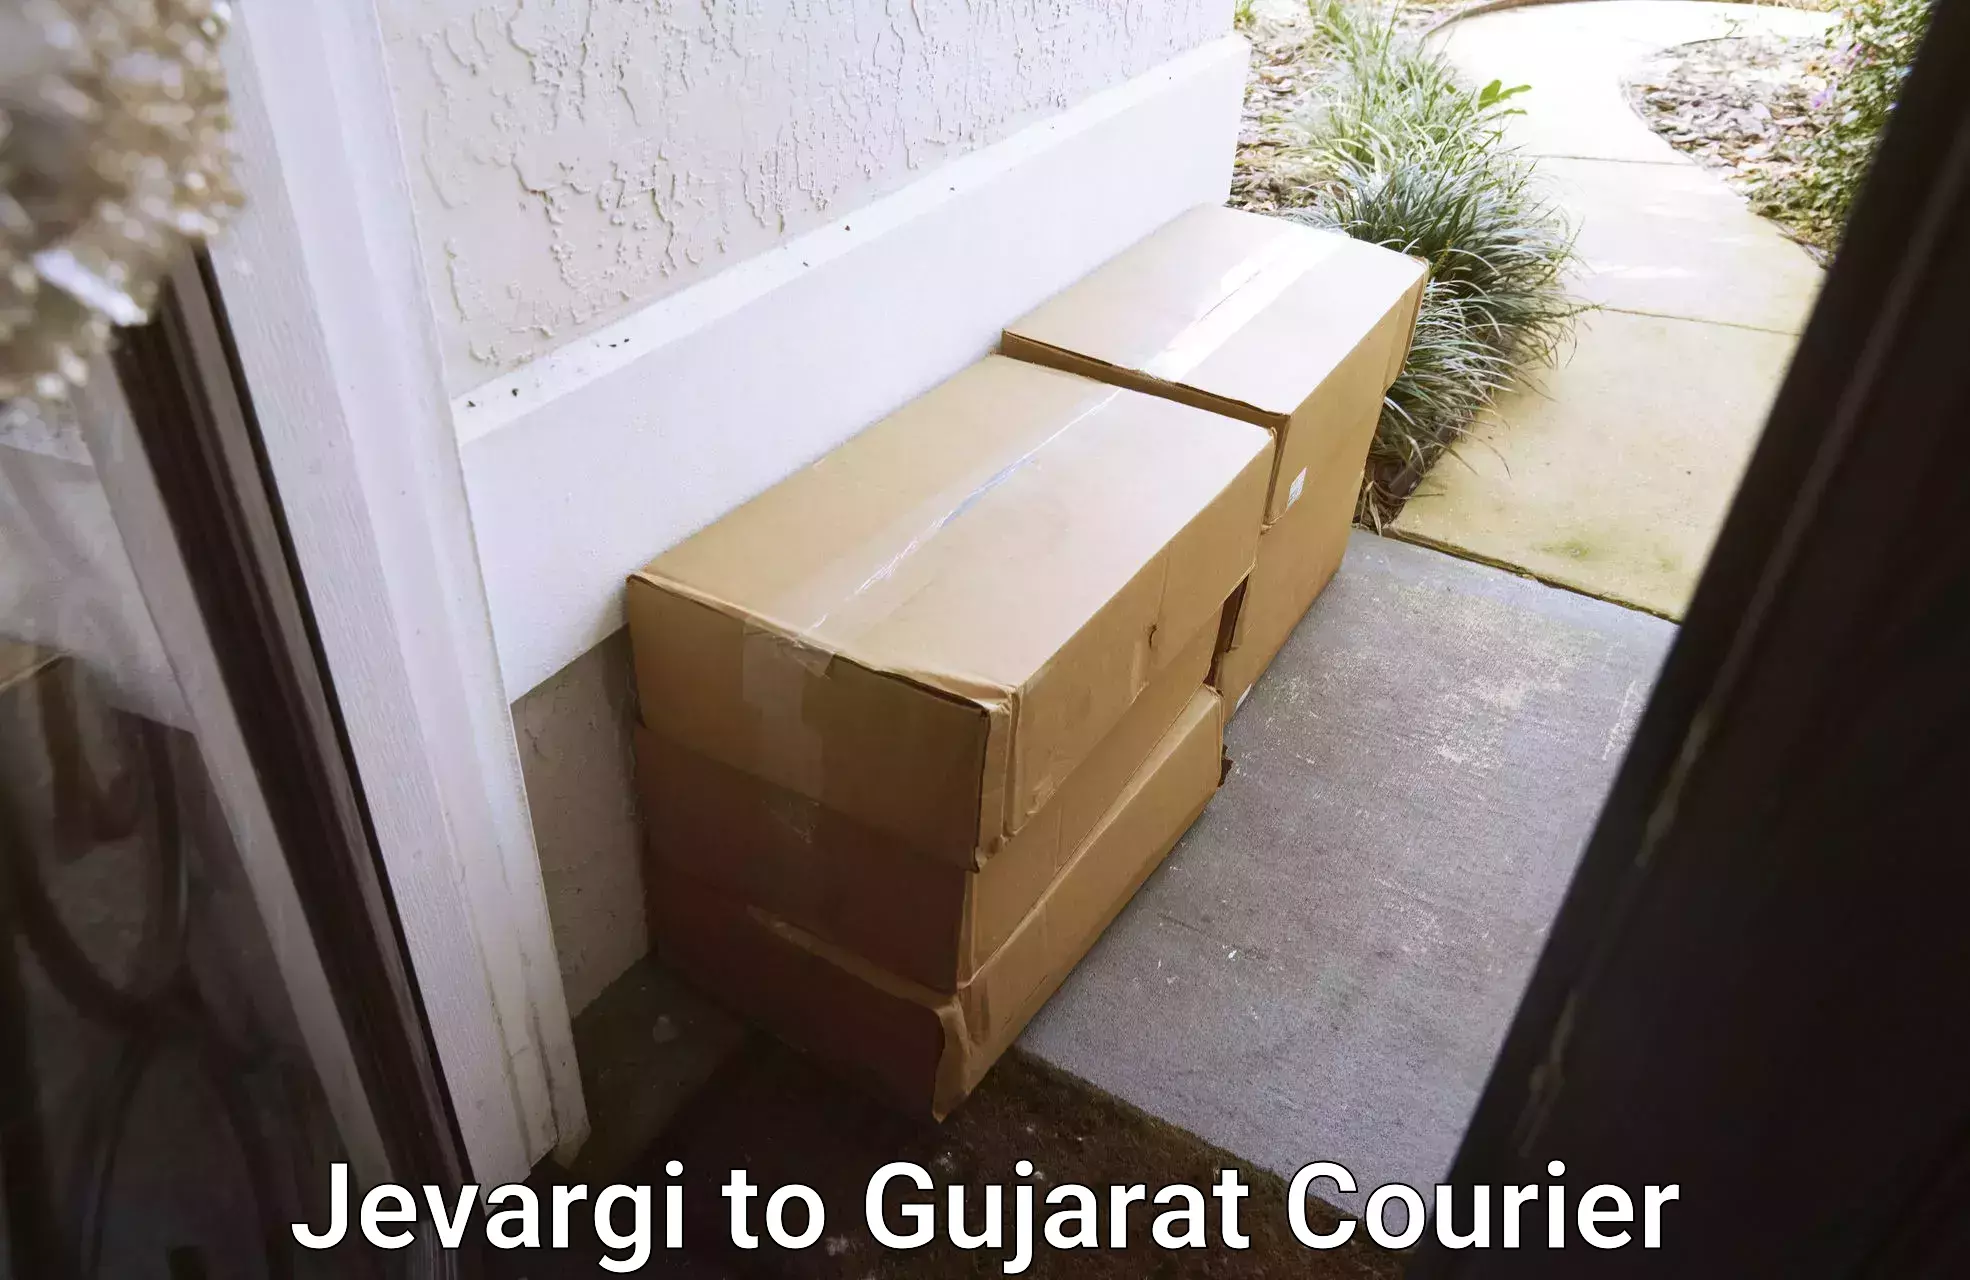 Furniture moving experts Jevargi to Gujarat